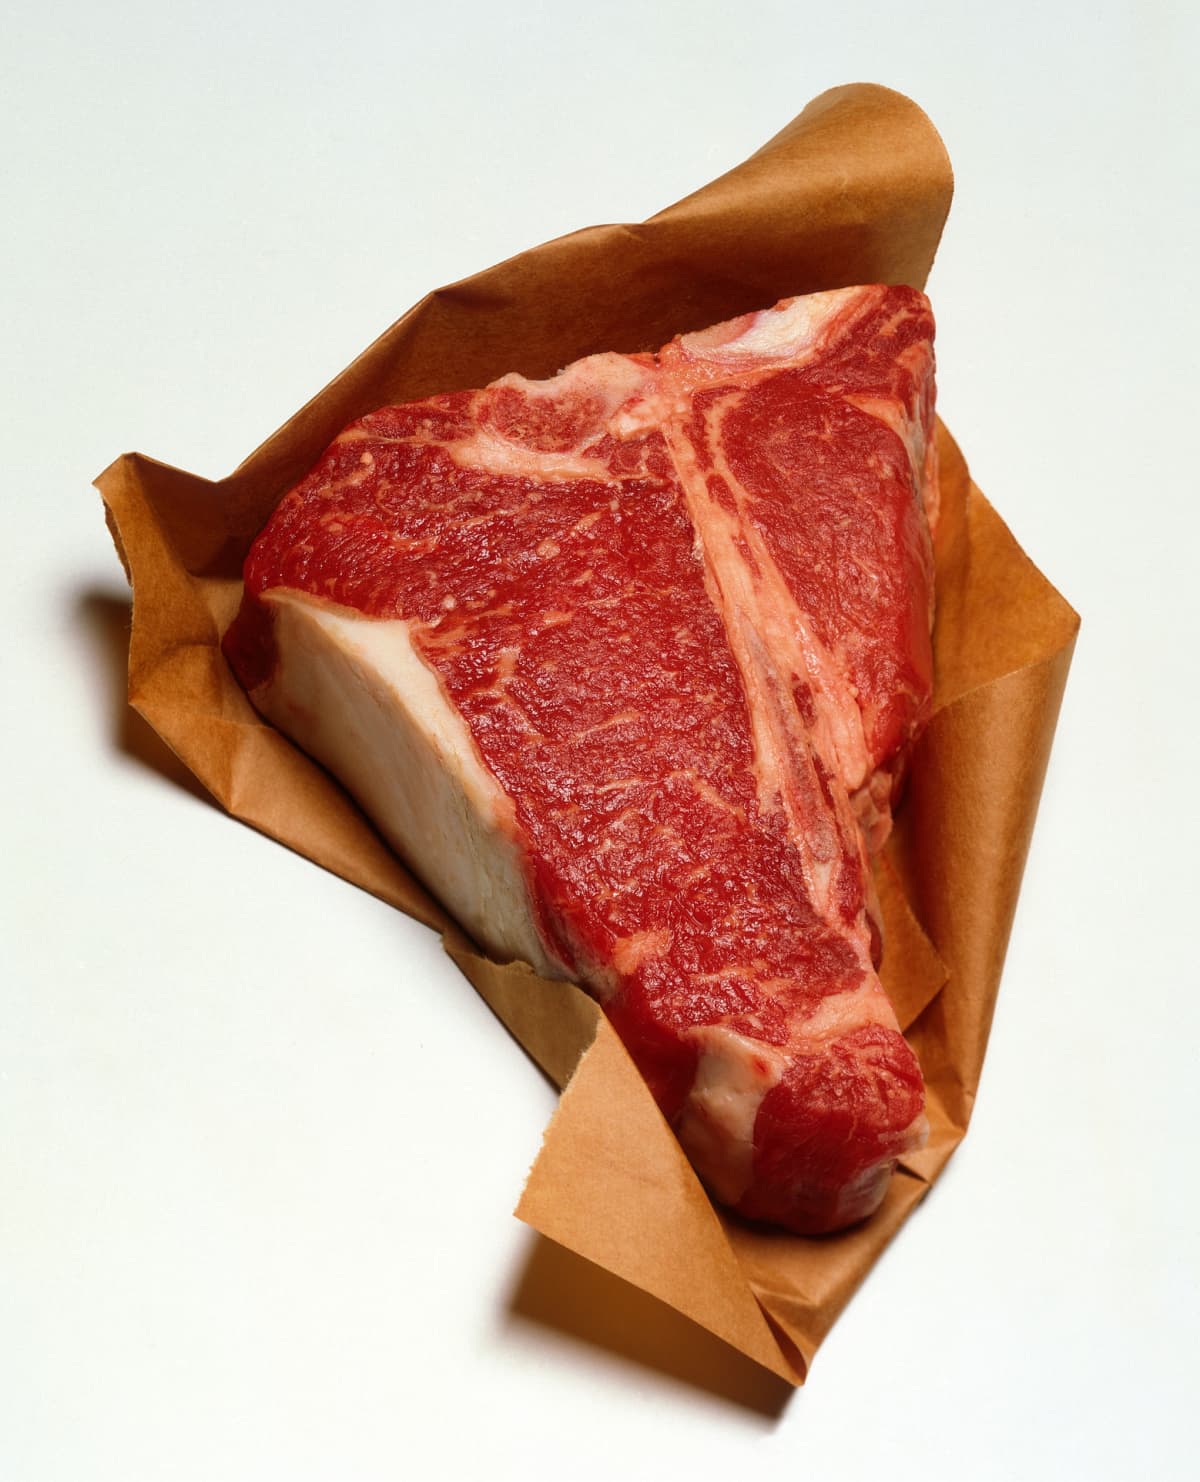 Steak on top of brown paper